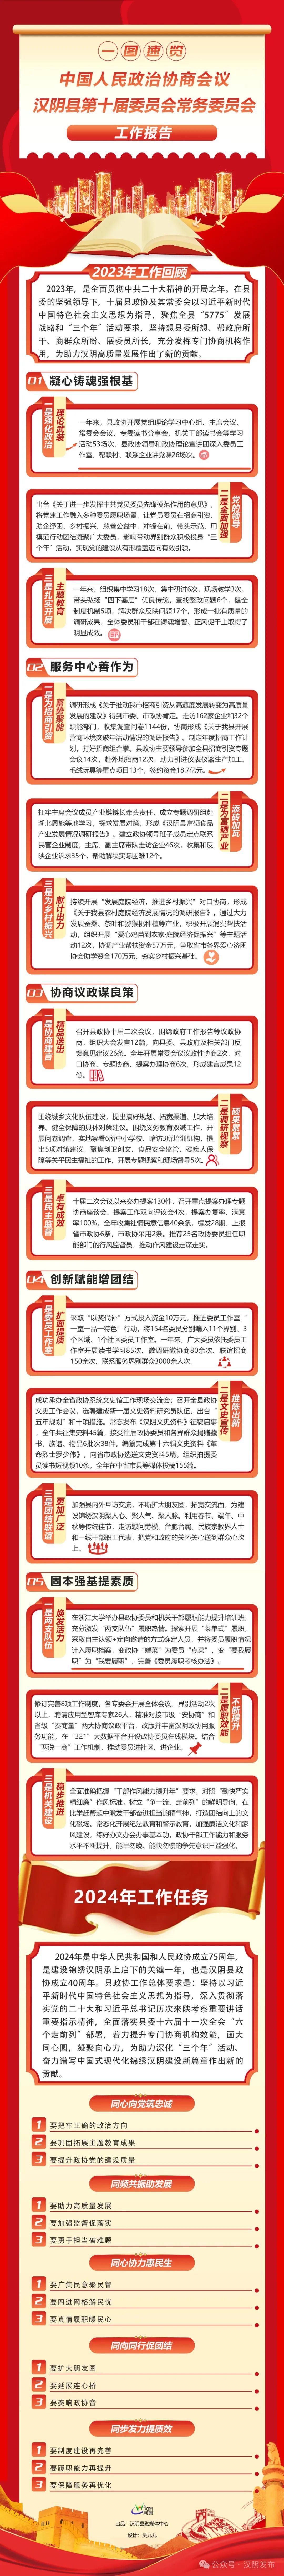 聚焦两会 | 一图速览政协汉阴县第十届委员会常务委员会工作报告